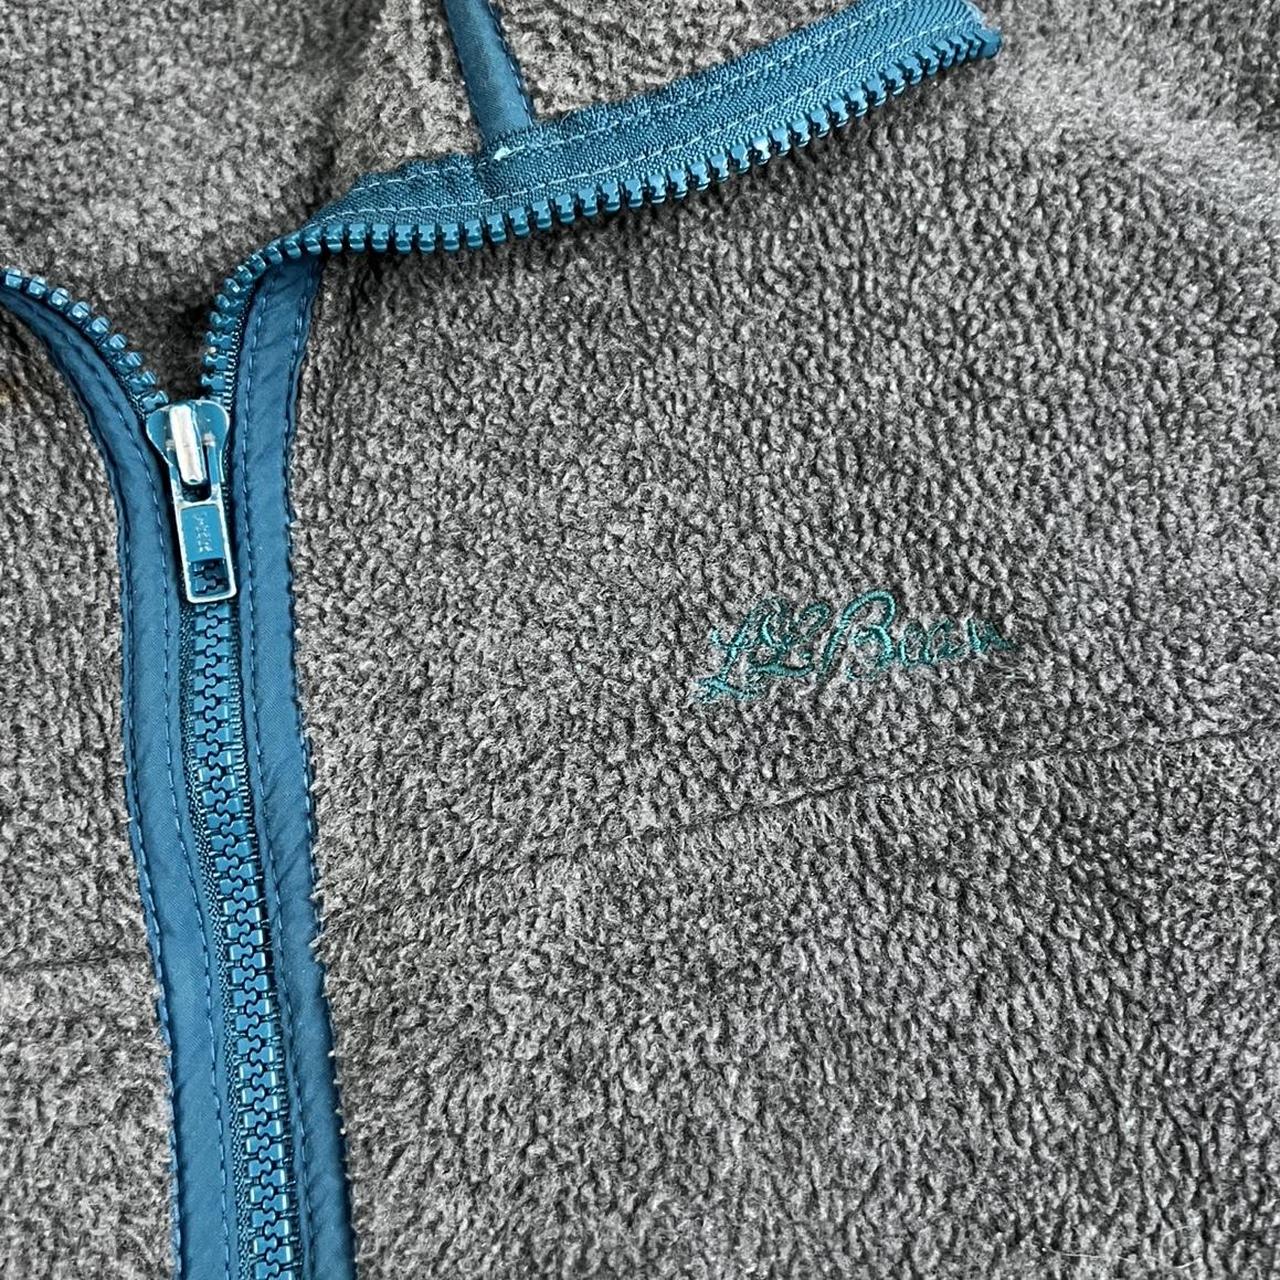 Product Image 2 - Vintage LL Bean fleece vest.

Men's